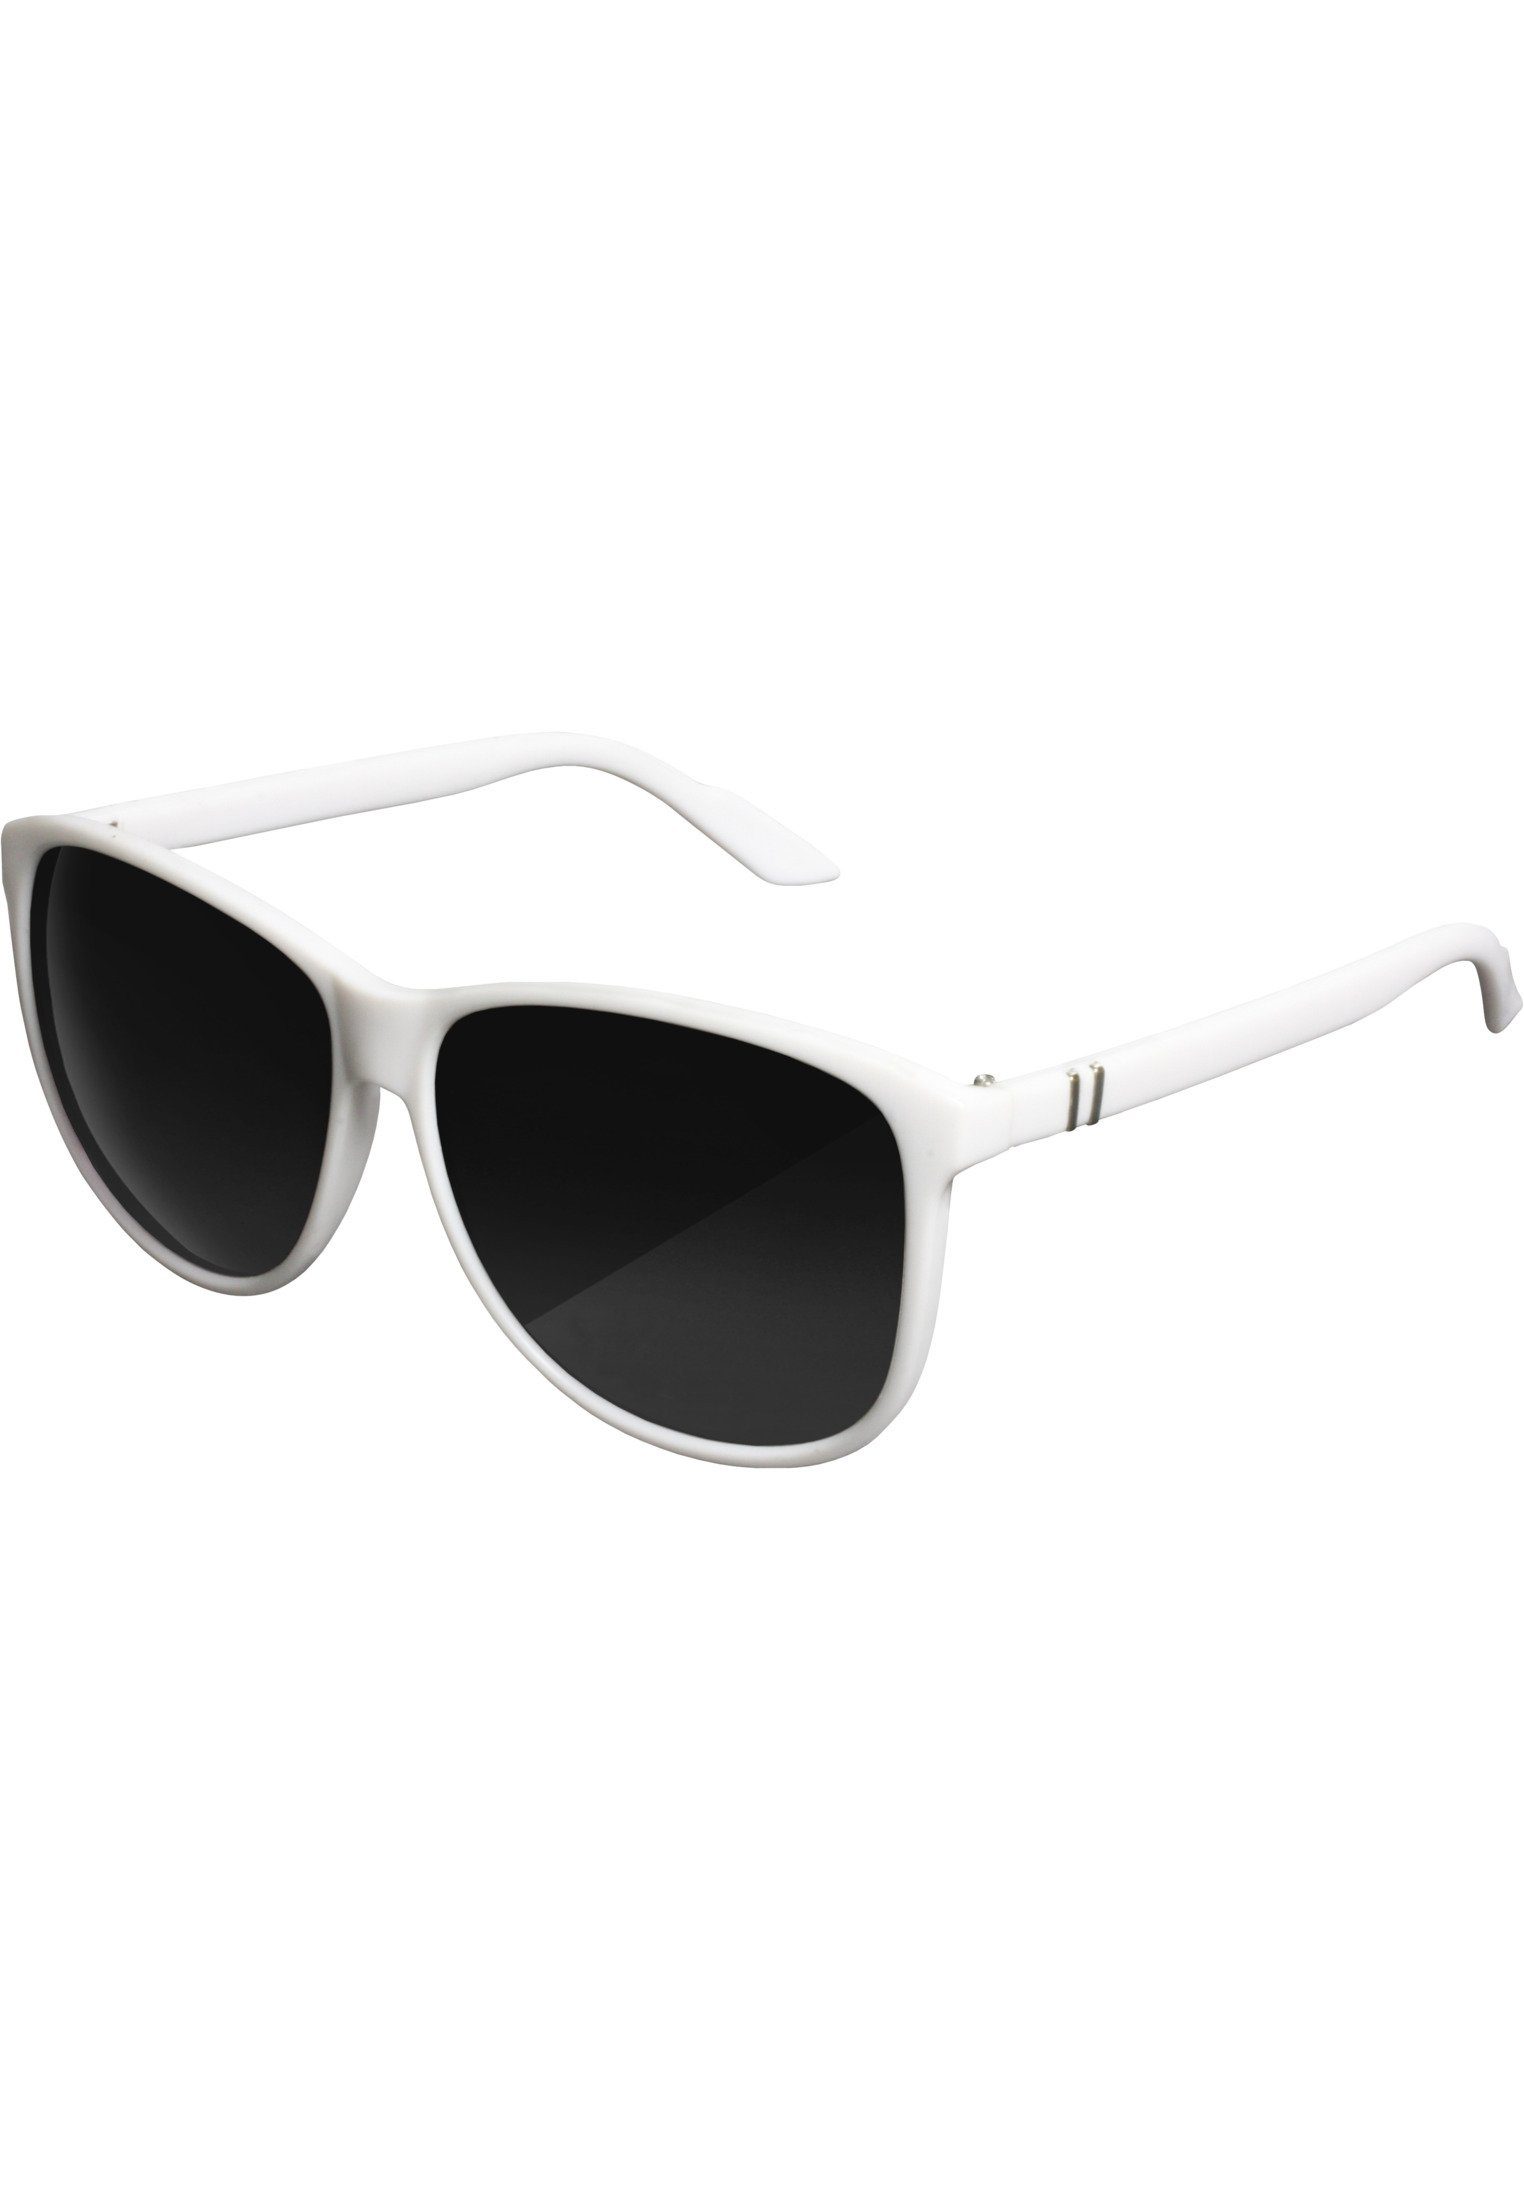 MSTRDS Sonnenbrille Accessoires Sunglasses Chirwa white | Sonnenbrillen